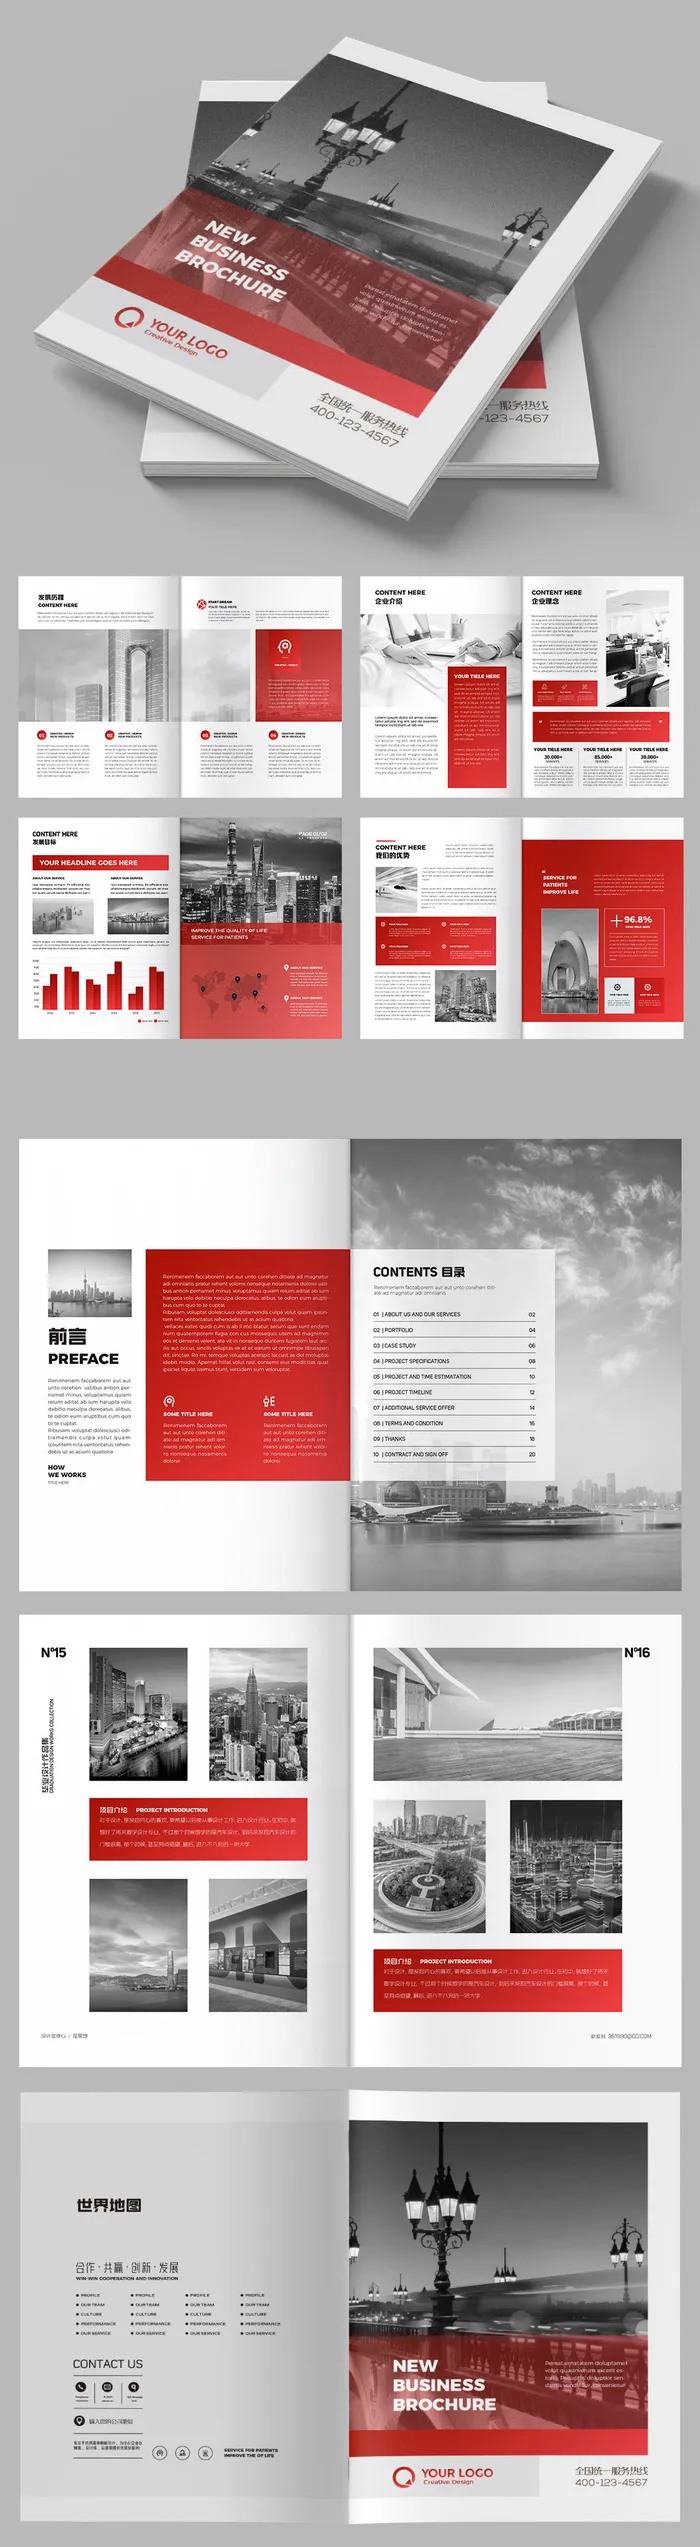 红色企业宣传册公司画册模板企业宣传册欣赏